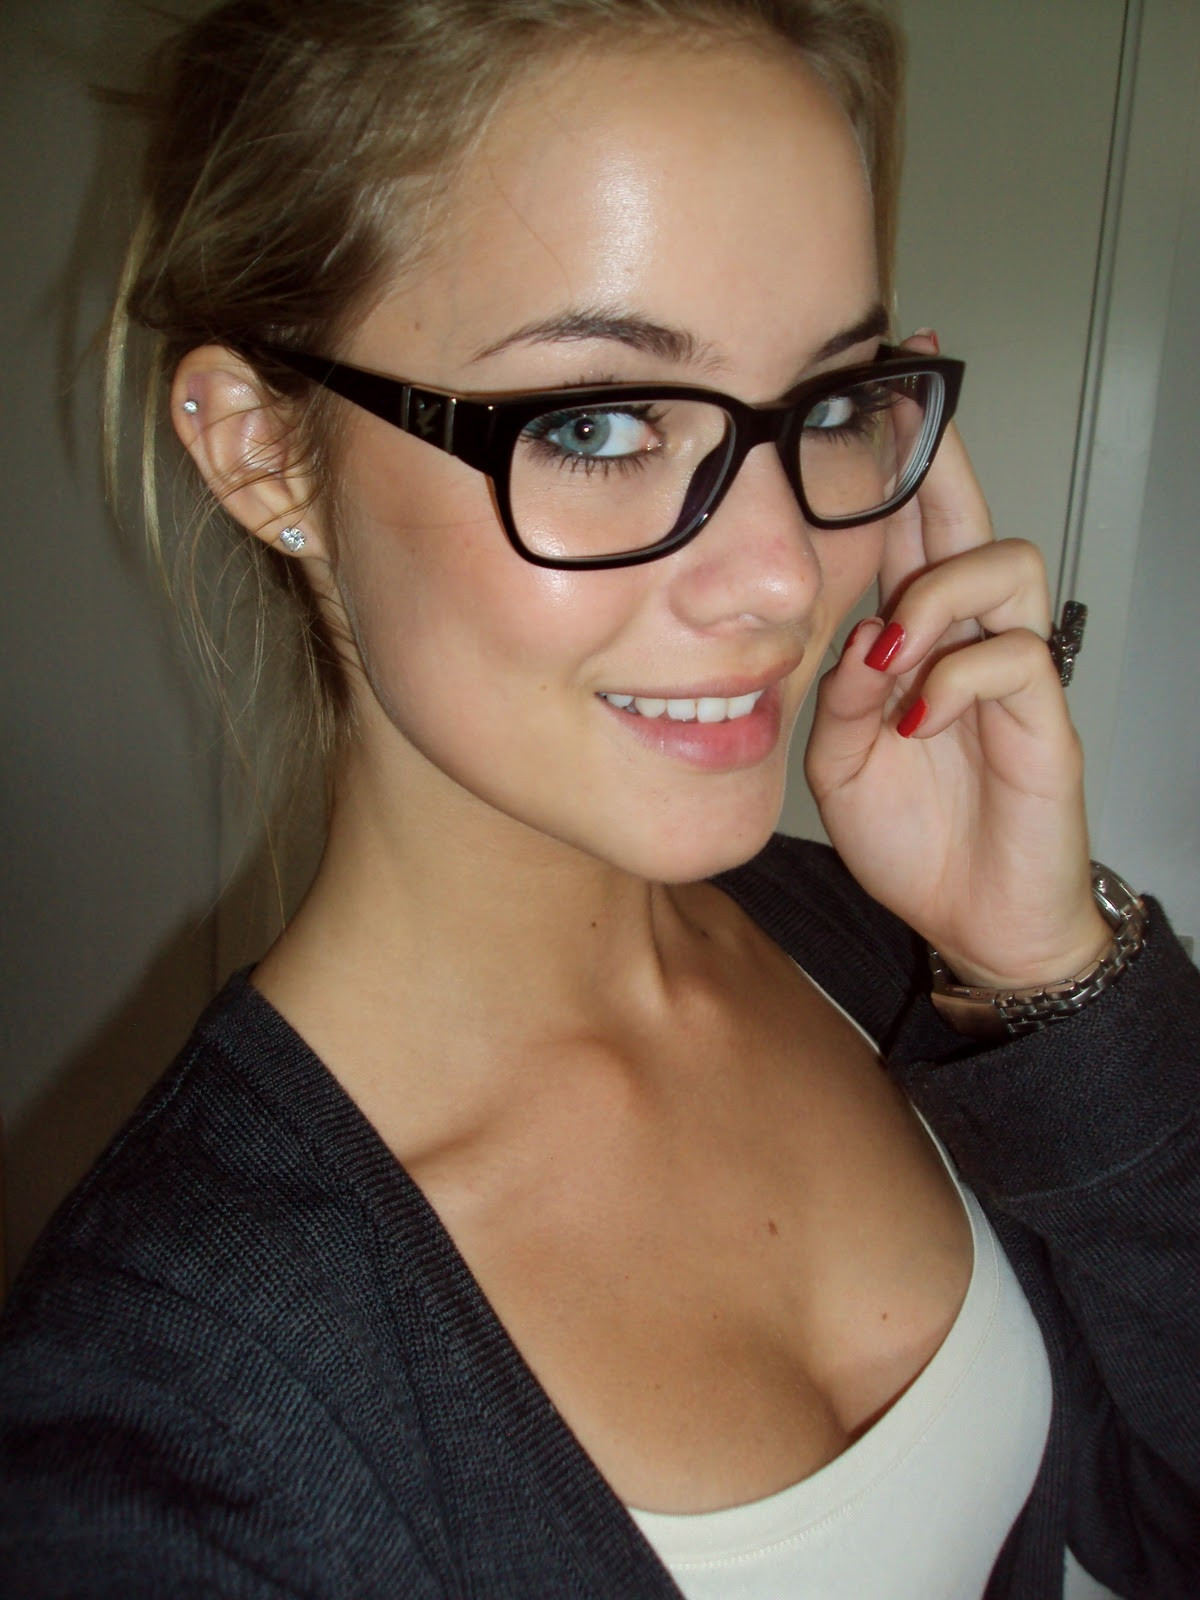 Sexy girl in glasses Porn Pic - EPORNER